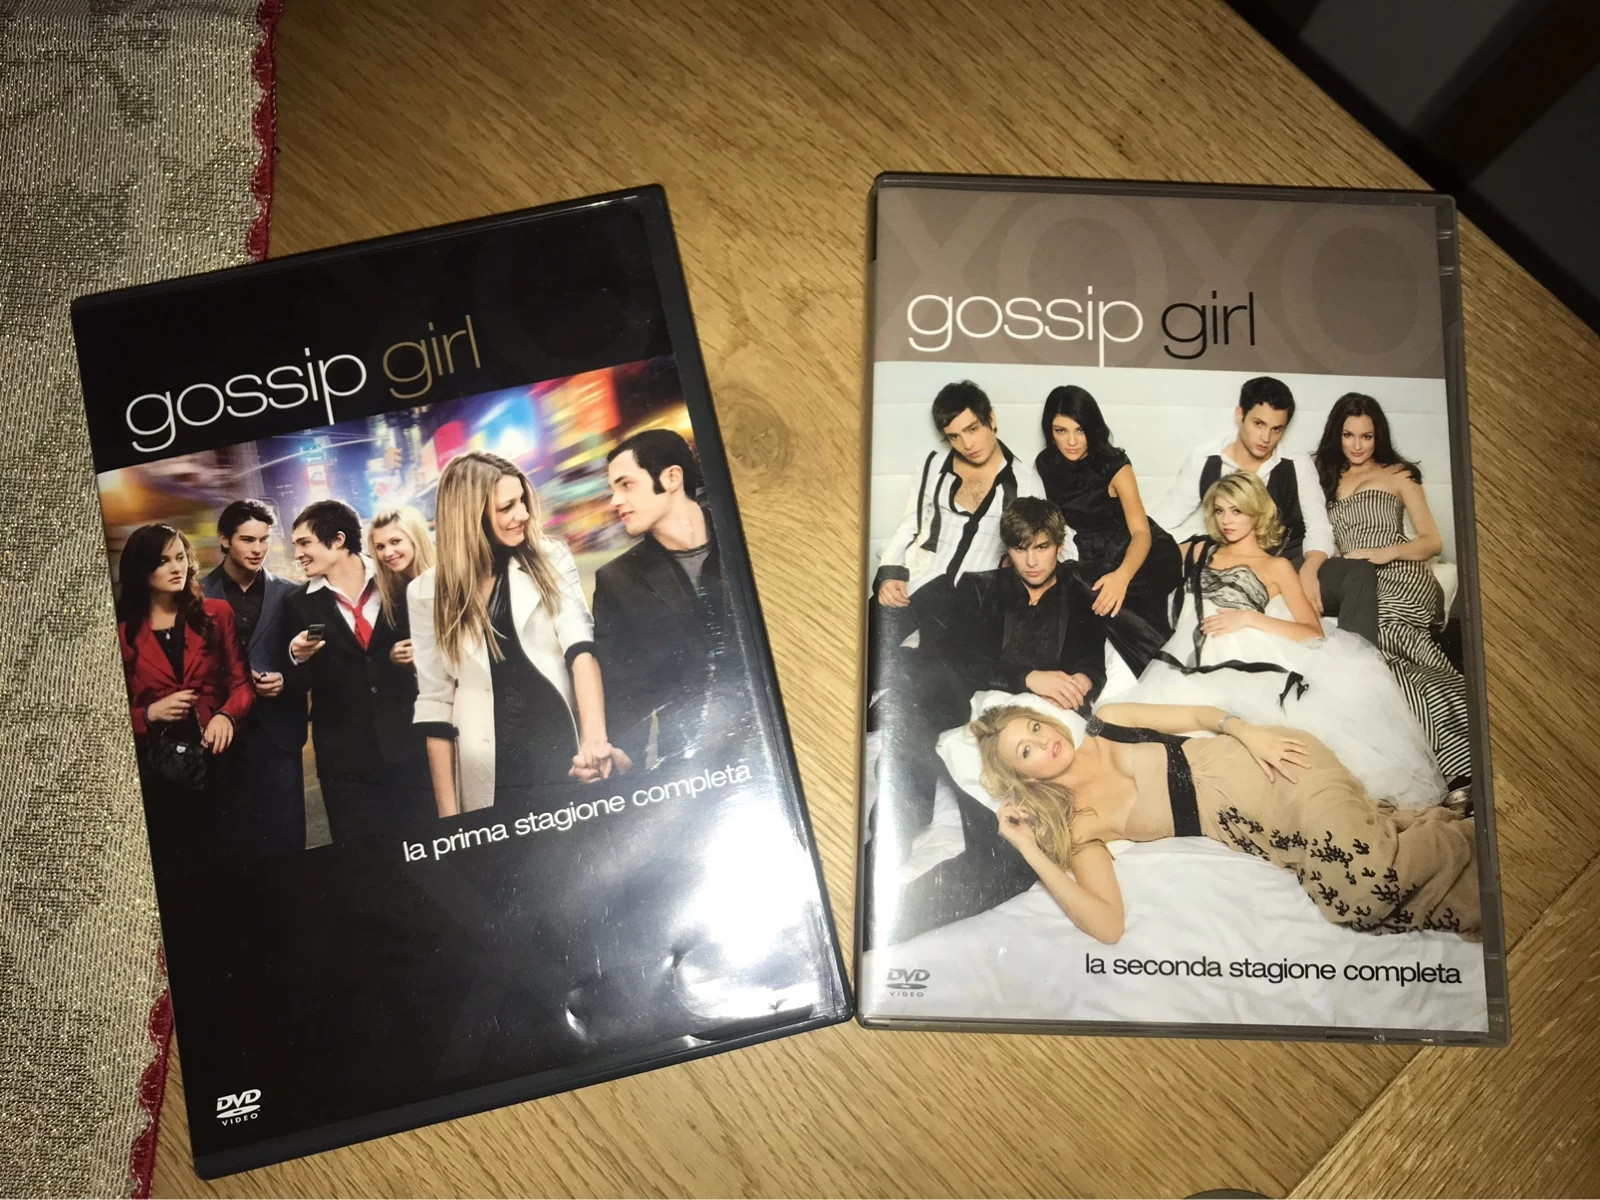 Media, Gossip Girl Dvd